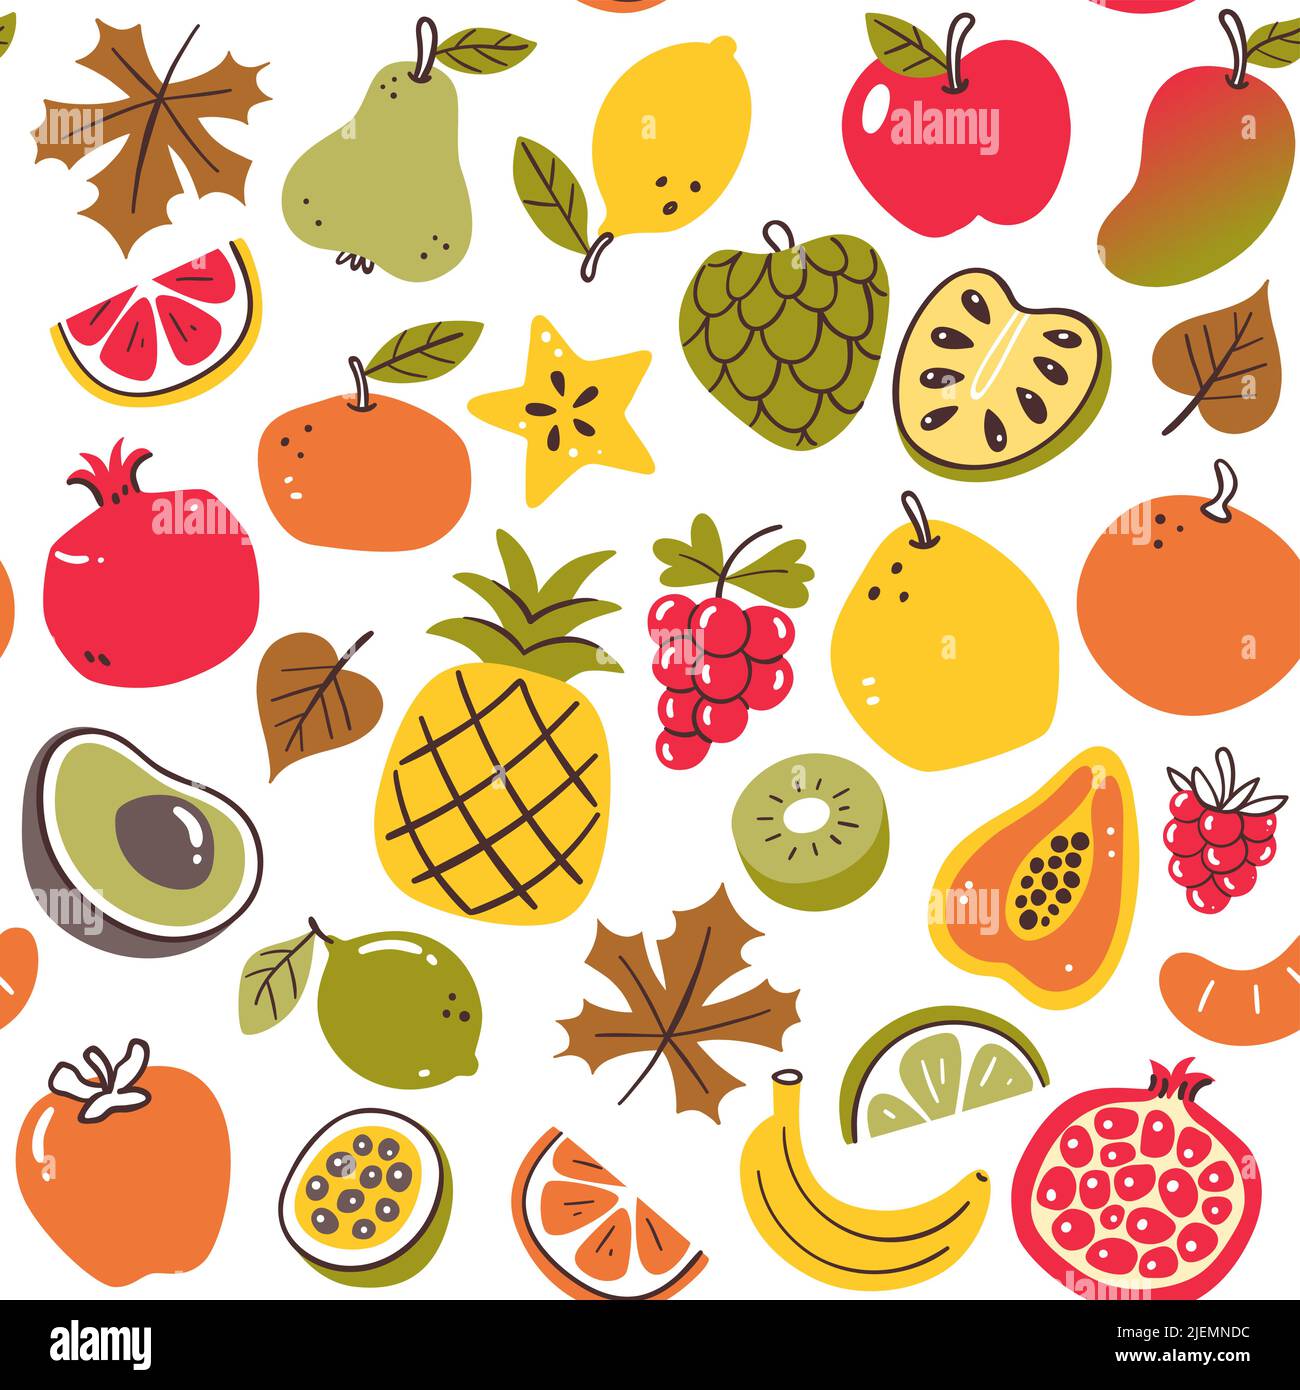 Farbenfrohe Herbstfrüchte mit nahtlosem Muster. Isolierte Früchte auf weißem Hintergrund. Vektorgrafik. Stock Vektor